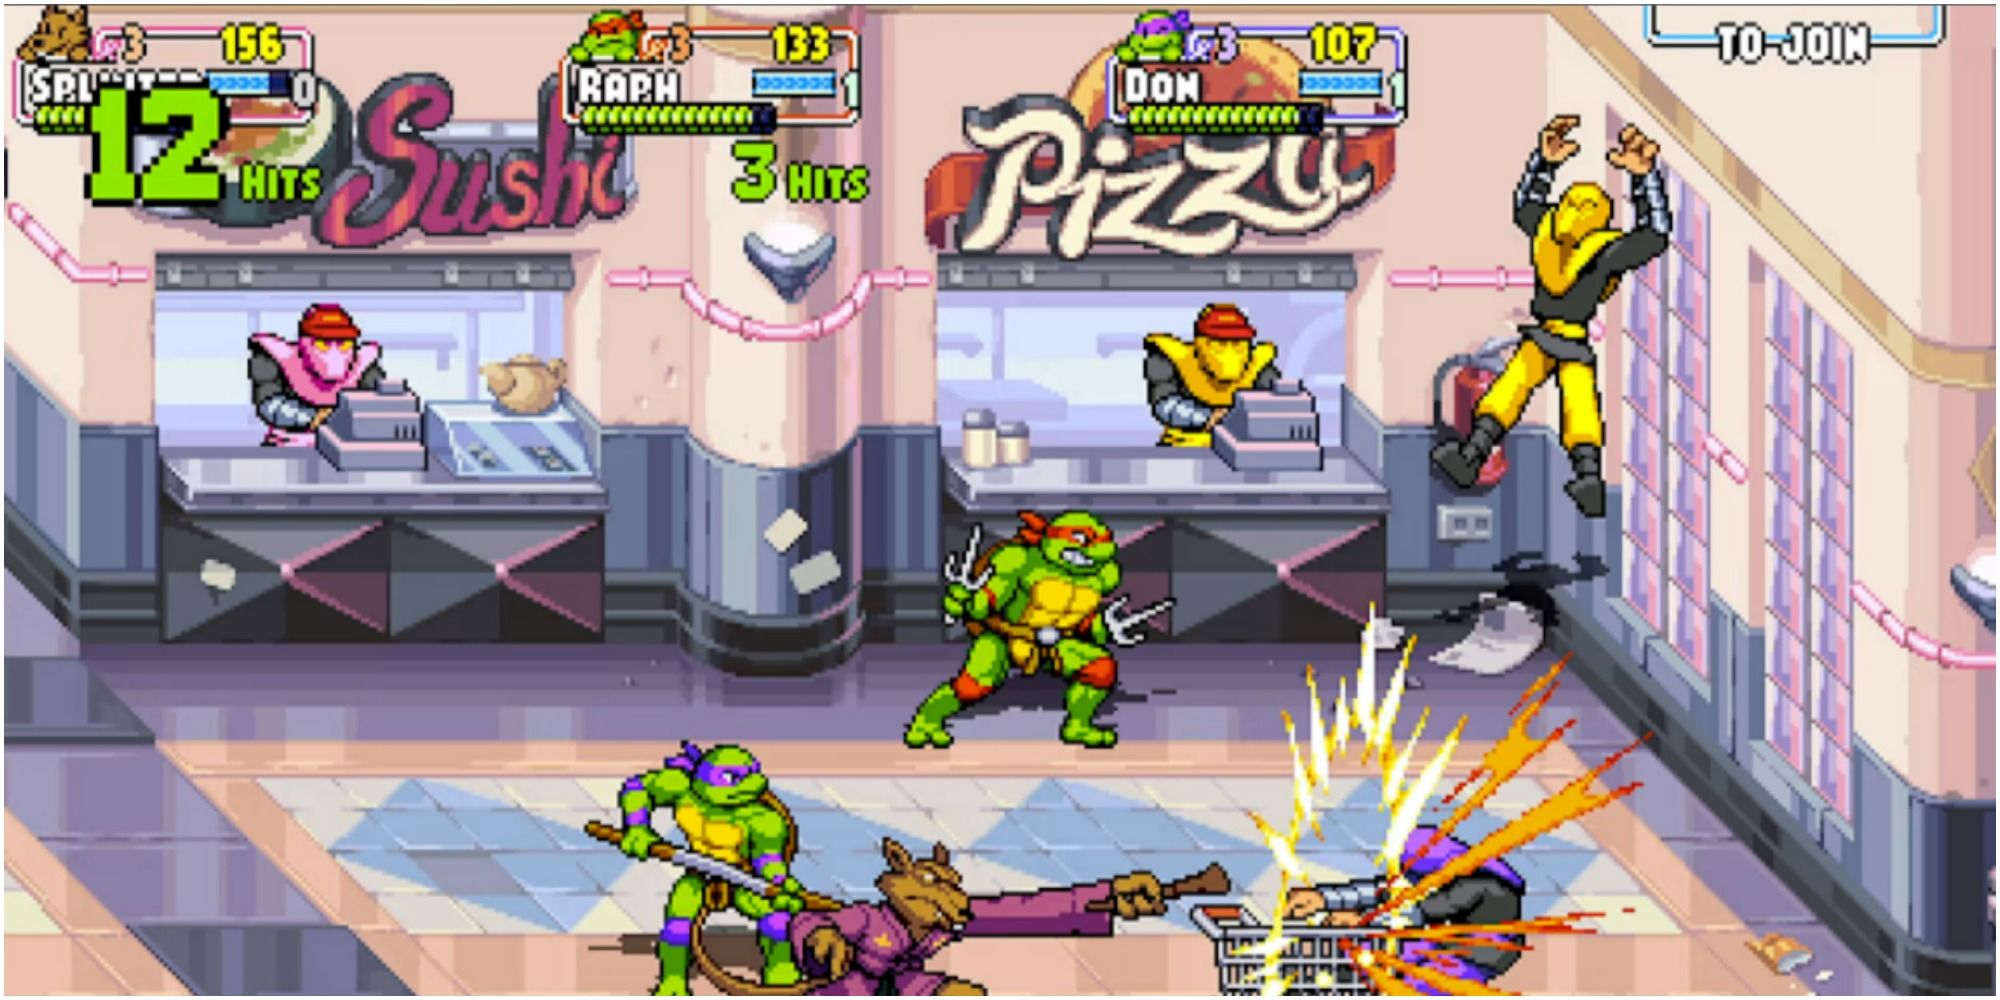 turtles and splinter battling baddies in a food court